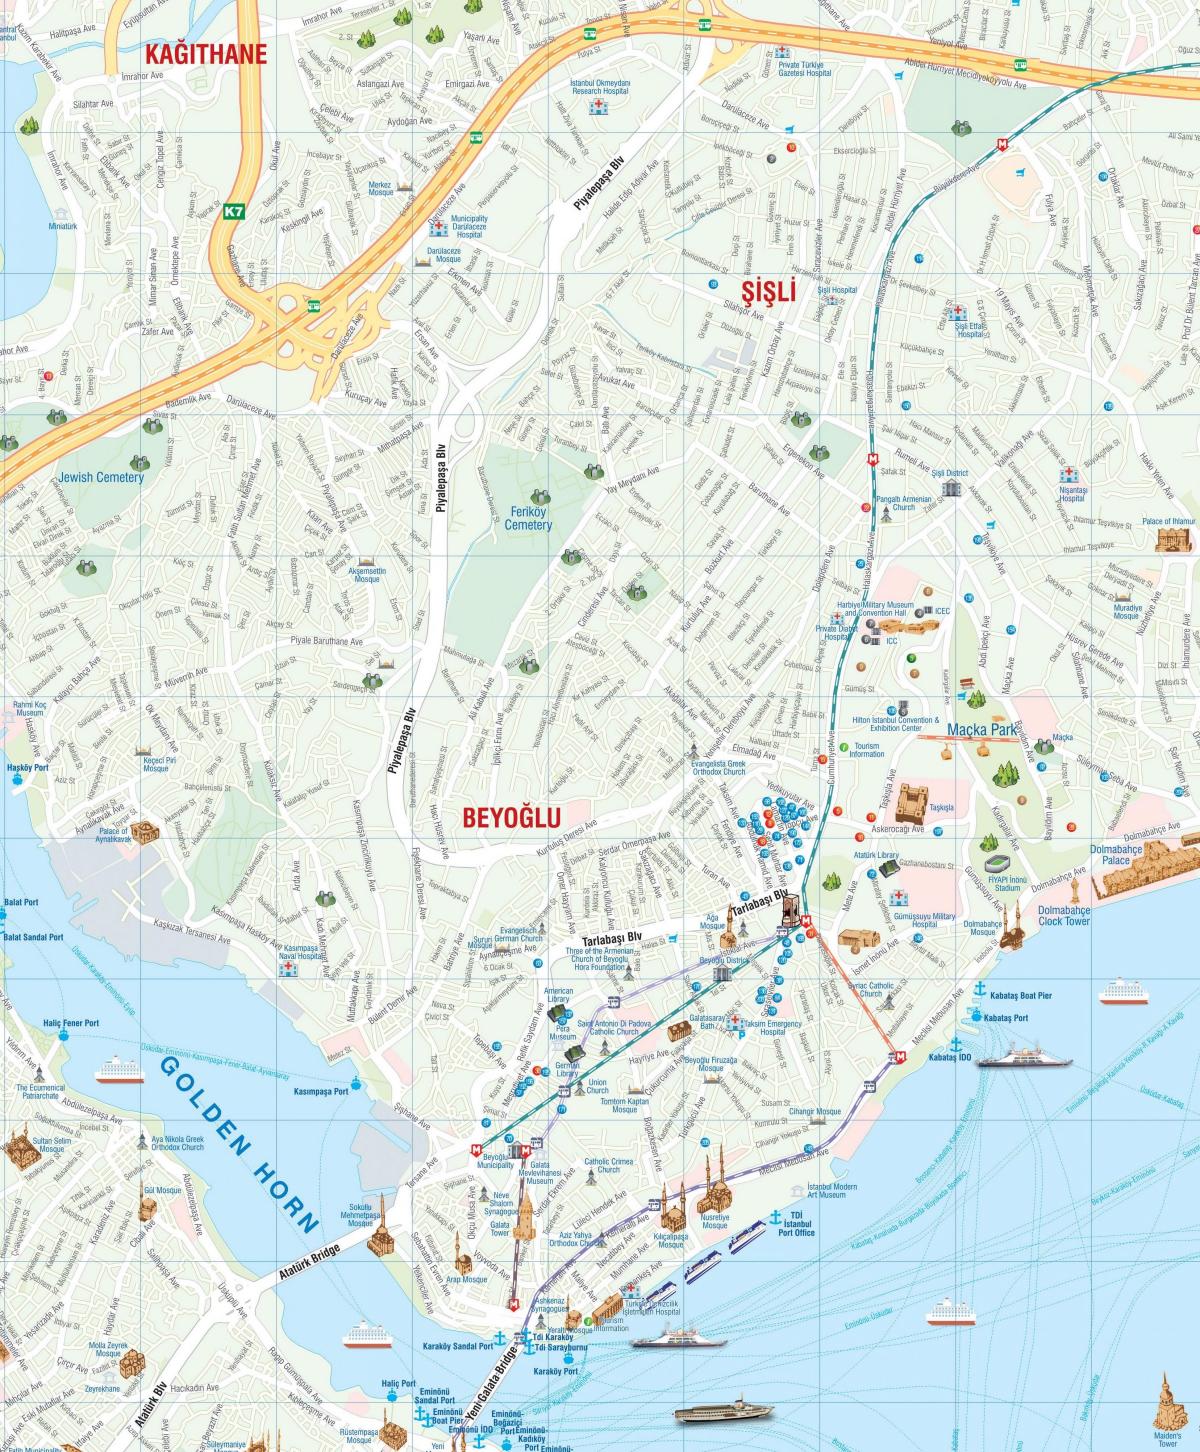 mapa de beyoglu, en estambul